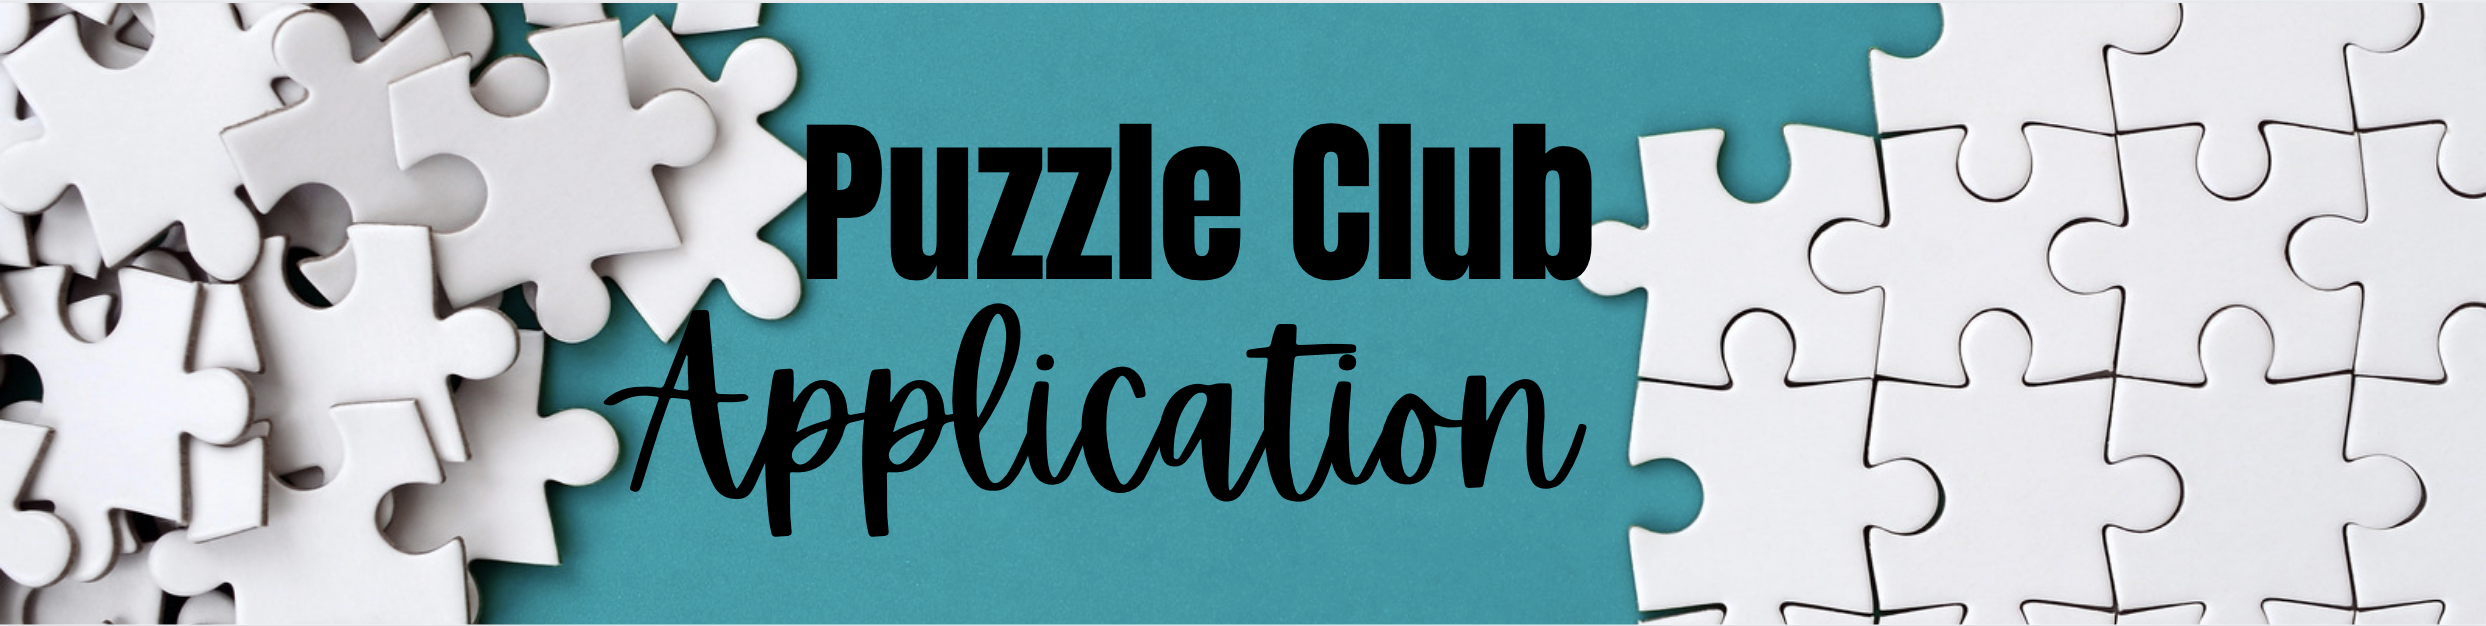 puzzle club